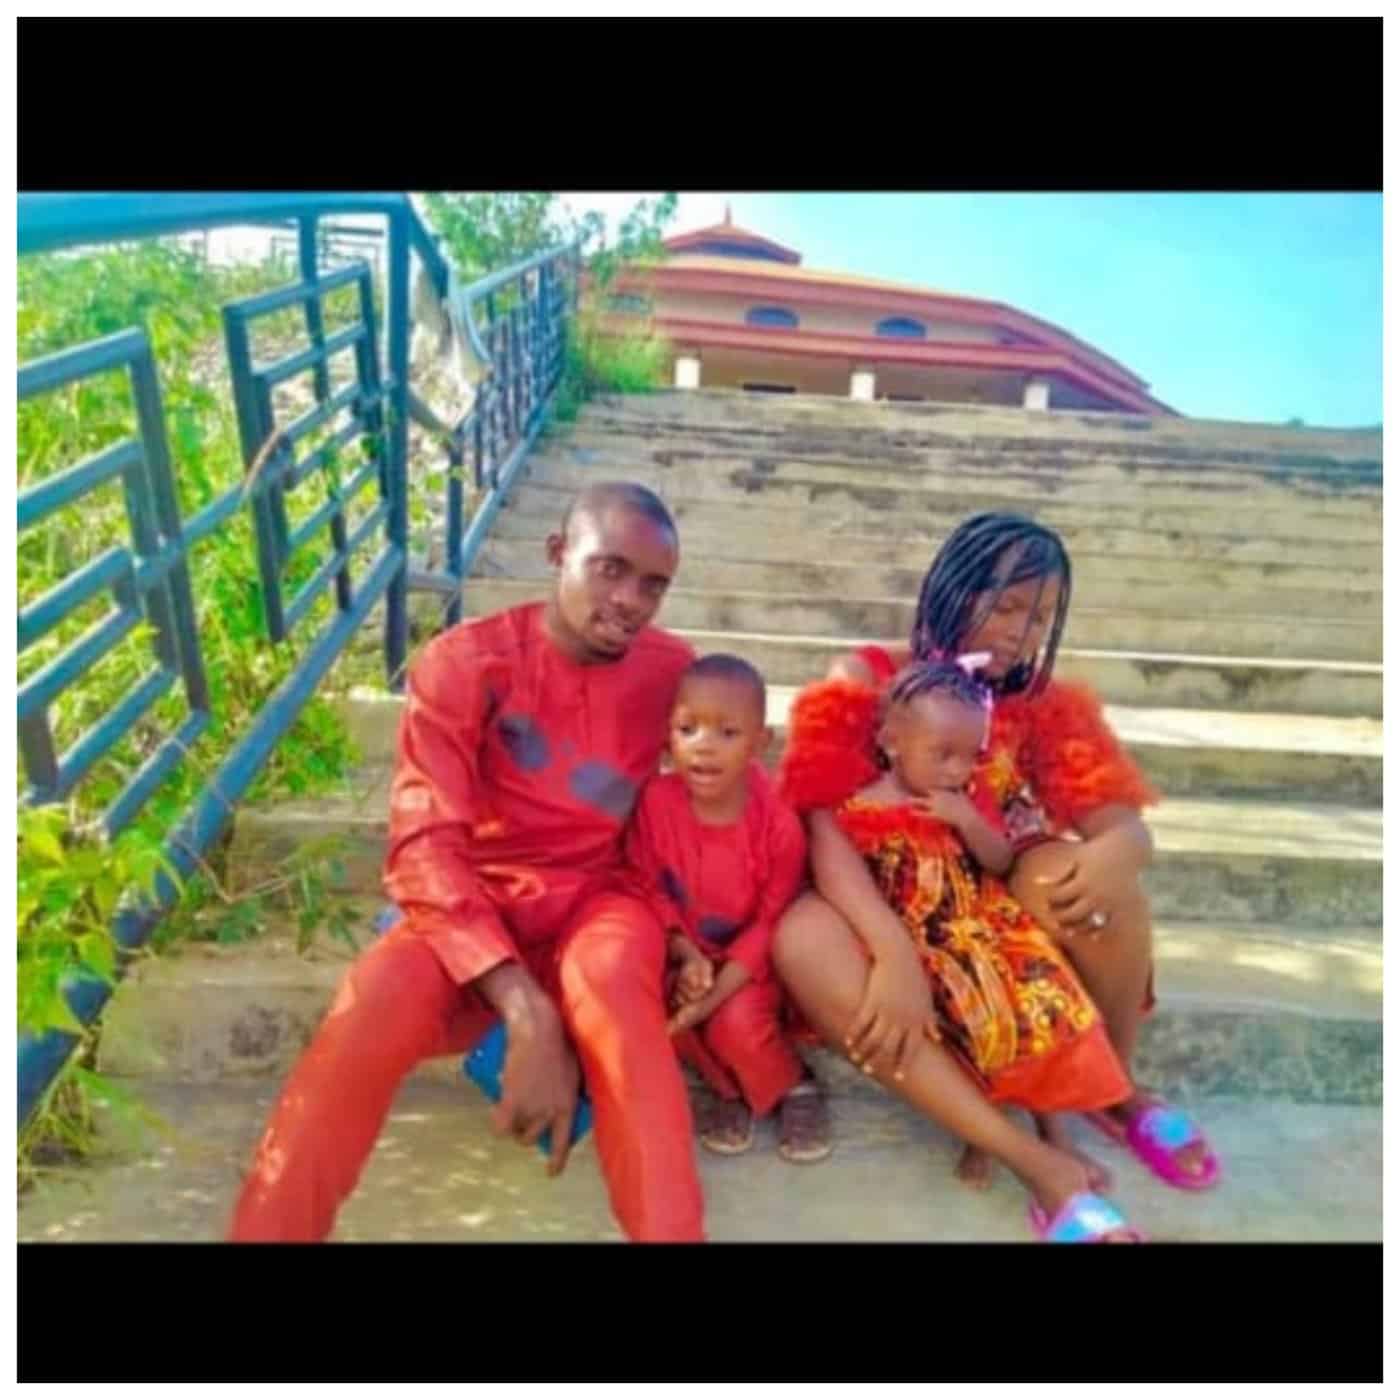 Grandma set ablaze son and daughter-in-law in Ondo